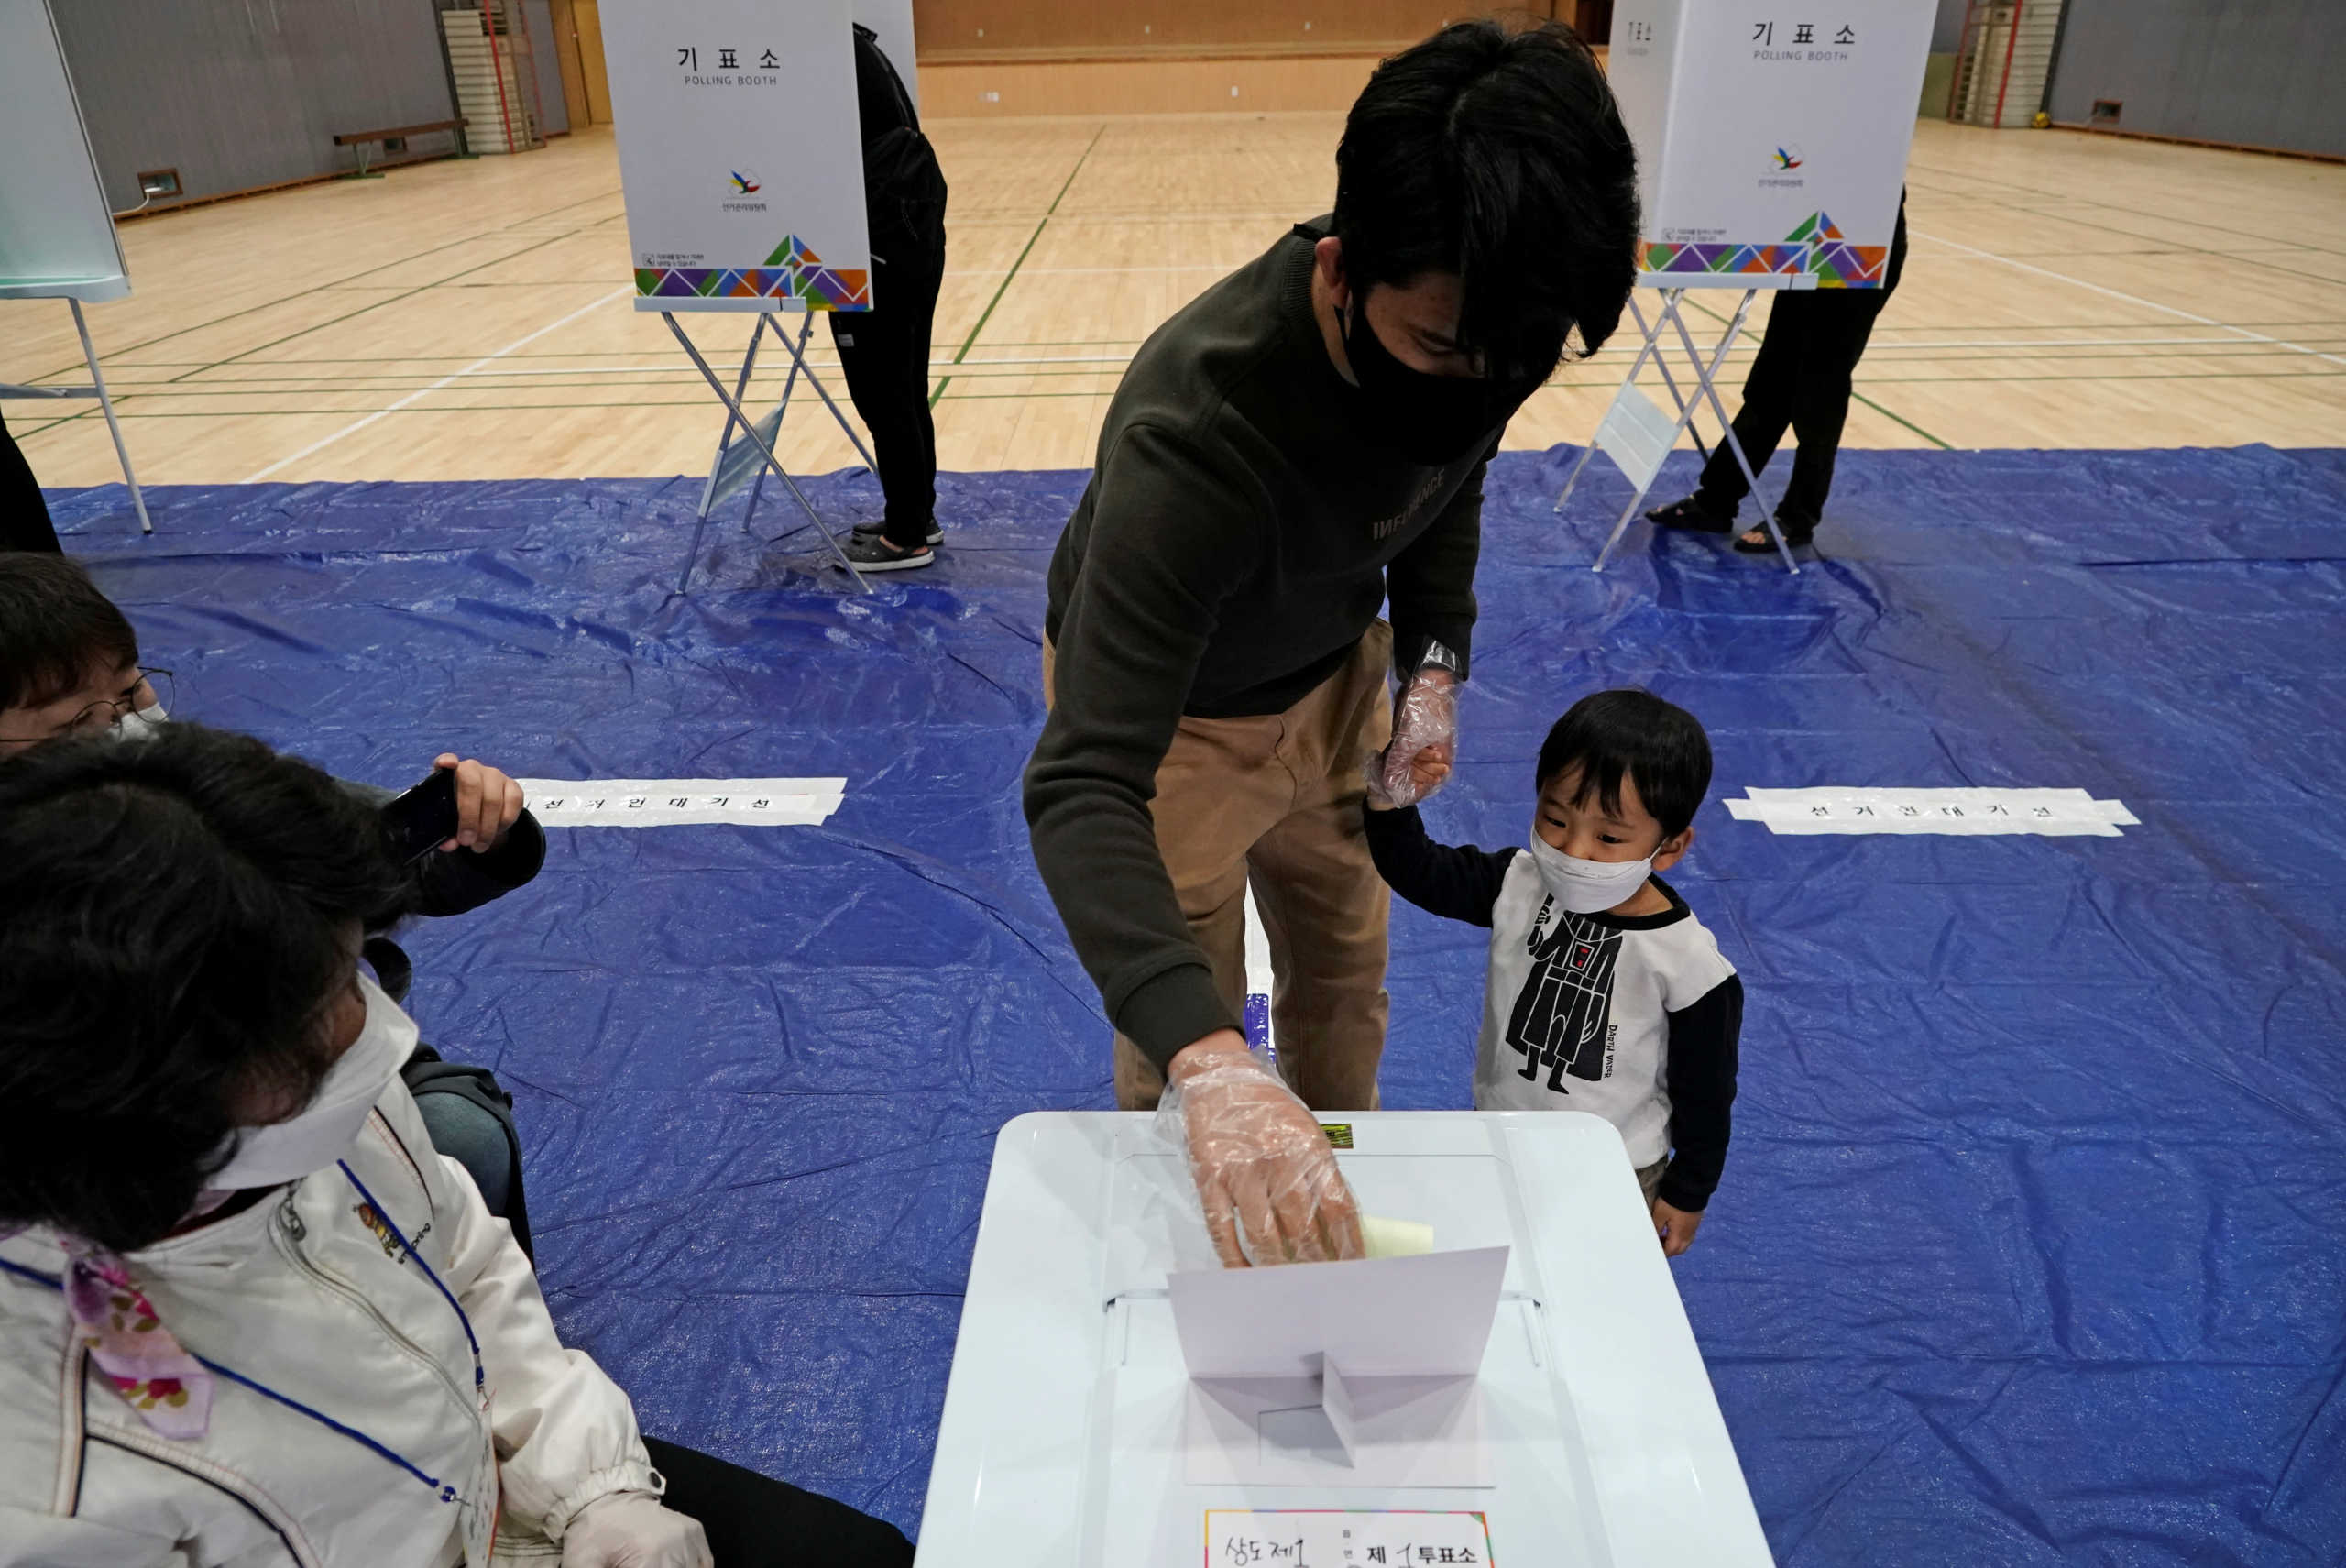 Νότια Κορέα: Οι πιο μαζικές εκλογές εδώ και 28 χρόνια εν μέσω κορονοϊού! “Σάρωσε” ο Μουν (pics)